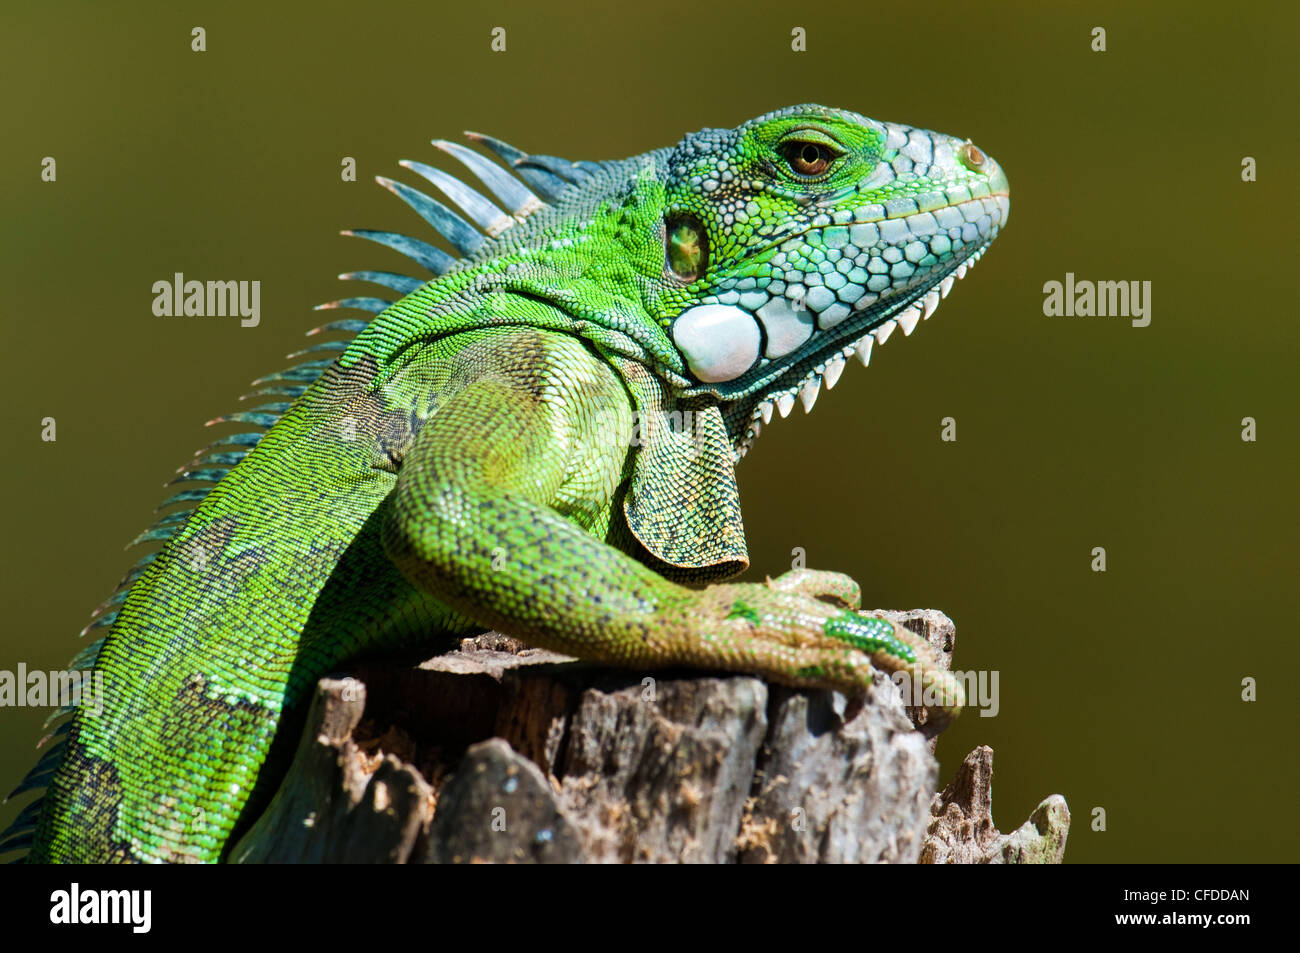 Vert (adultes) commune iguana (Iguana iguana), les zones humides du Pantanal, au sud-ouest de l'Amérique du Sud, Brésil Banque D'Images